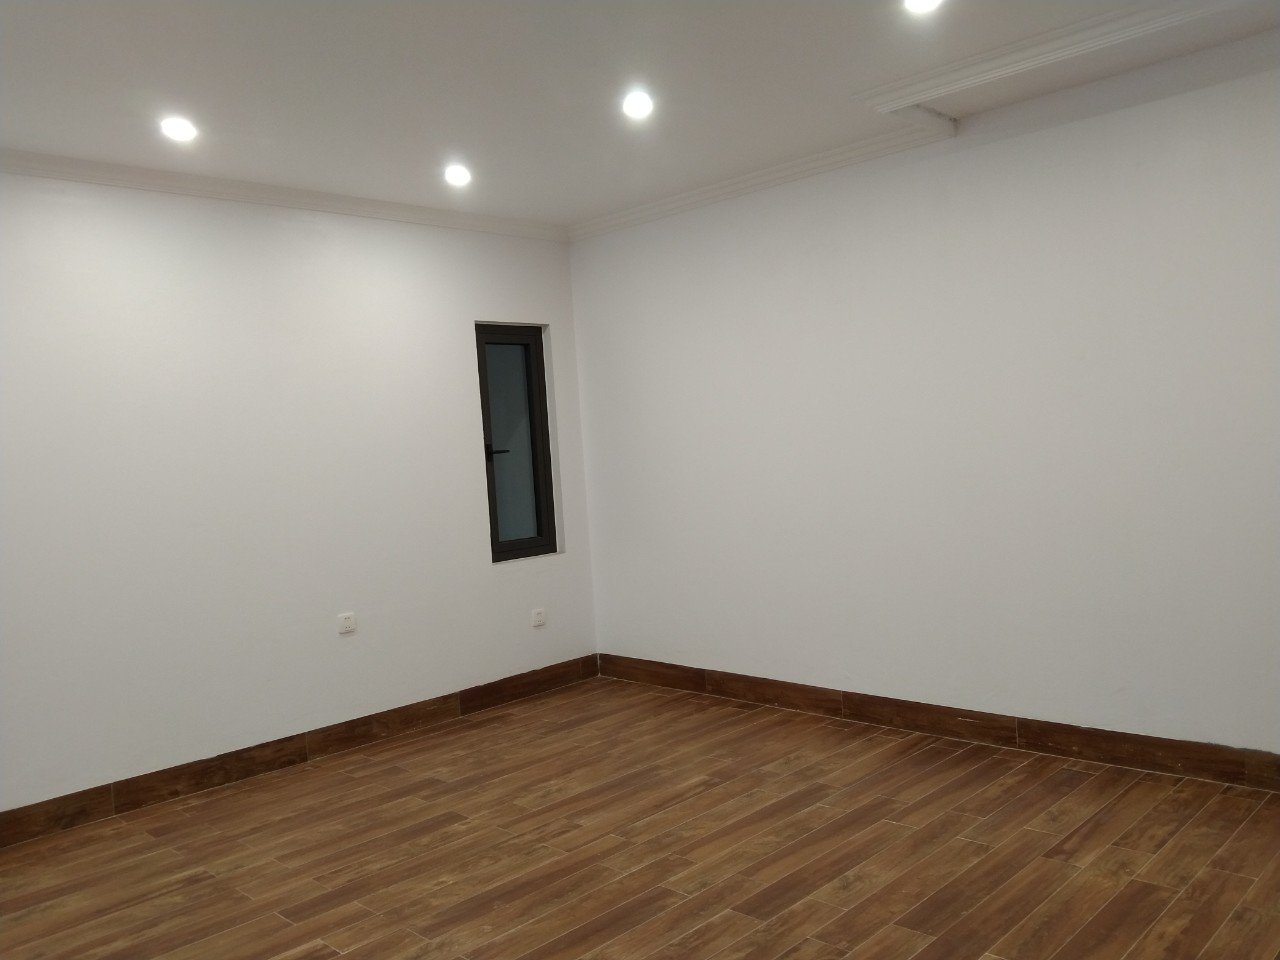 Cho thuê nhà, văn phòng Vĩnh Yên – Vĩnh Phúc 31